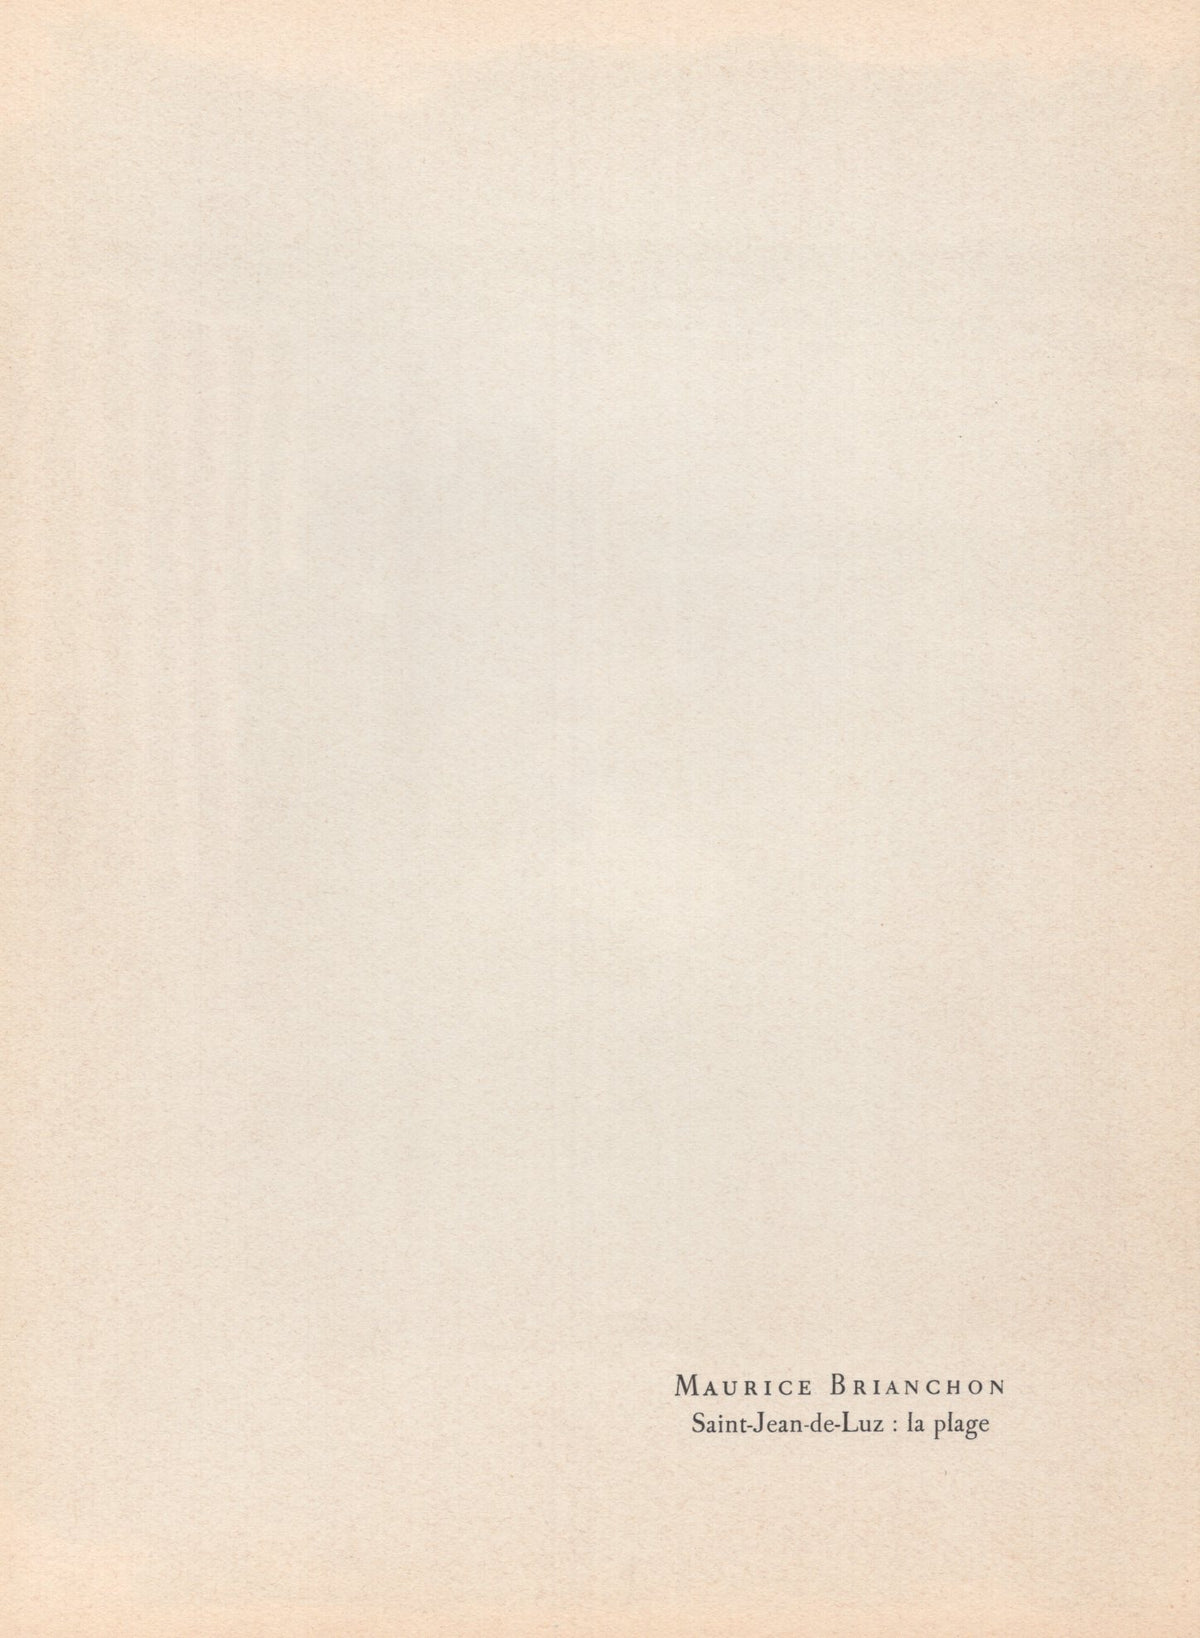 Maurice Brianchon - &quot;Saint-Jean-de-Luz : La plage&quot; - Mourlot Press 1964 Lithograph - 7.5 x 10&quot;